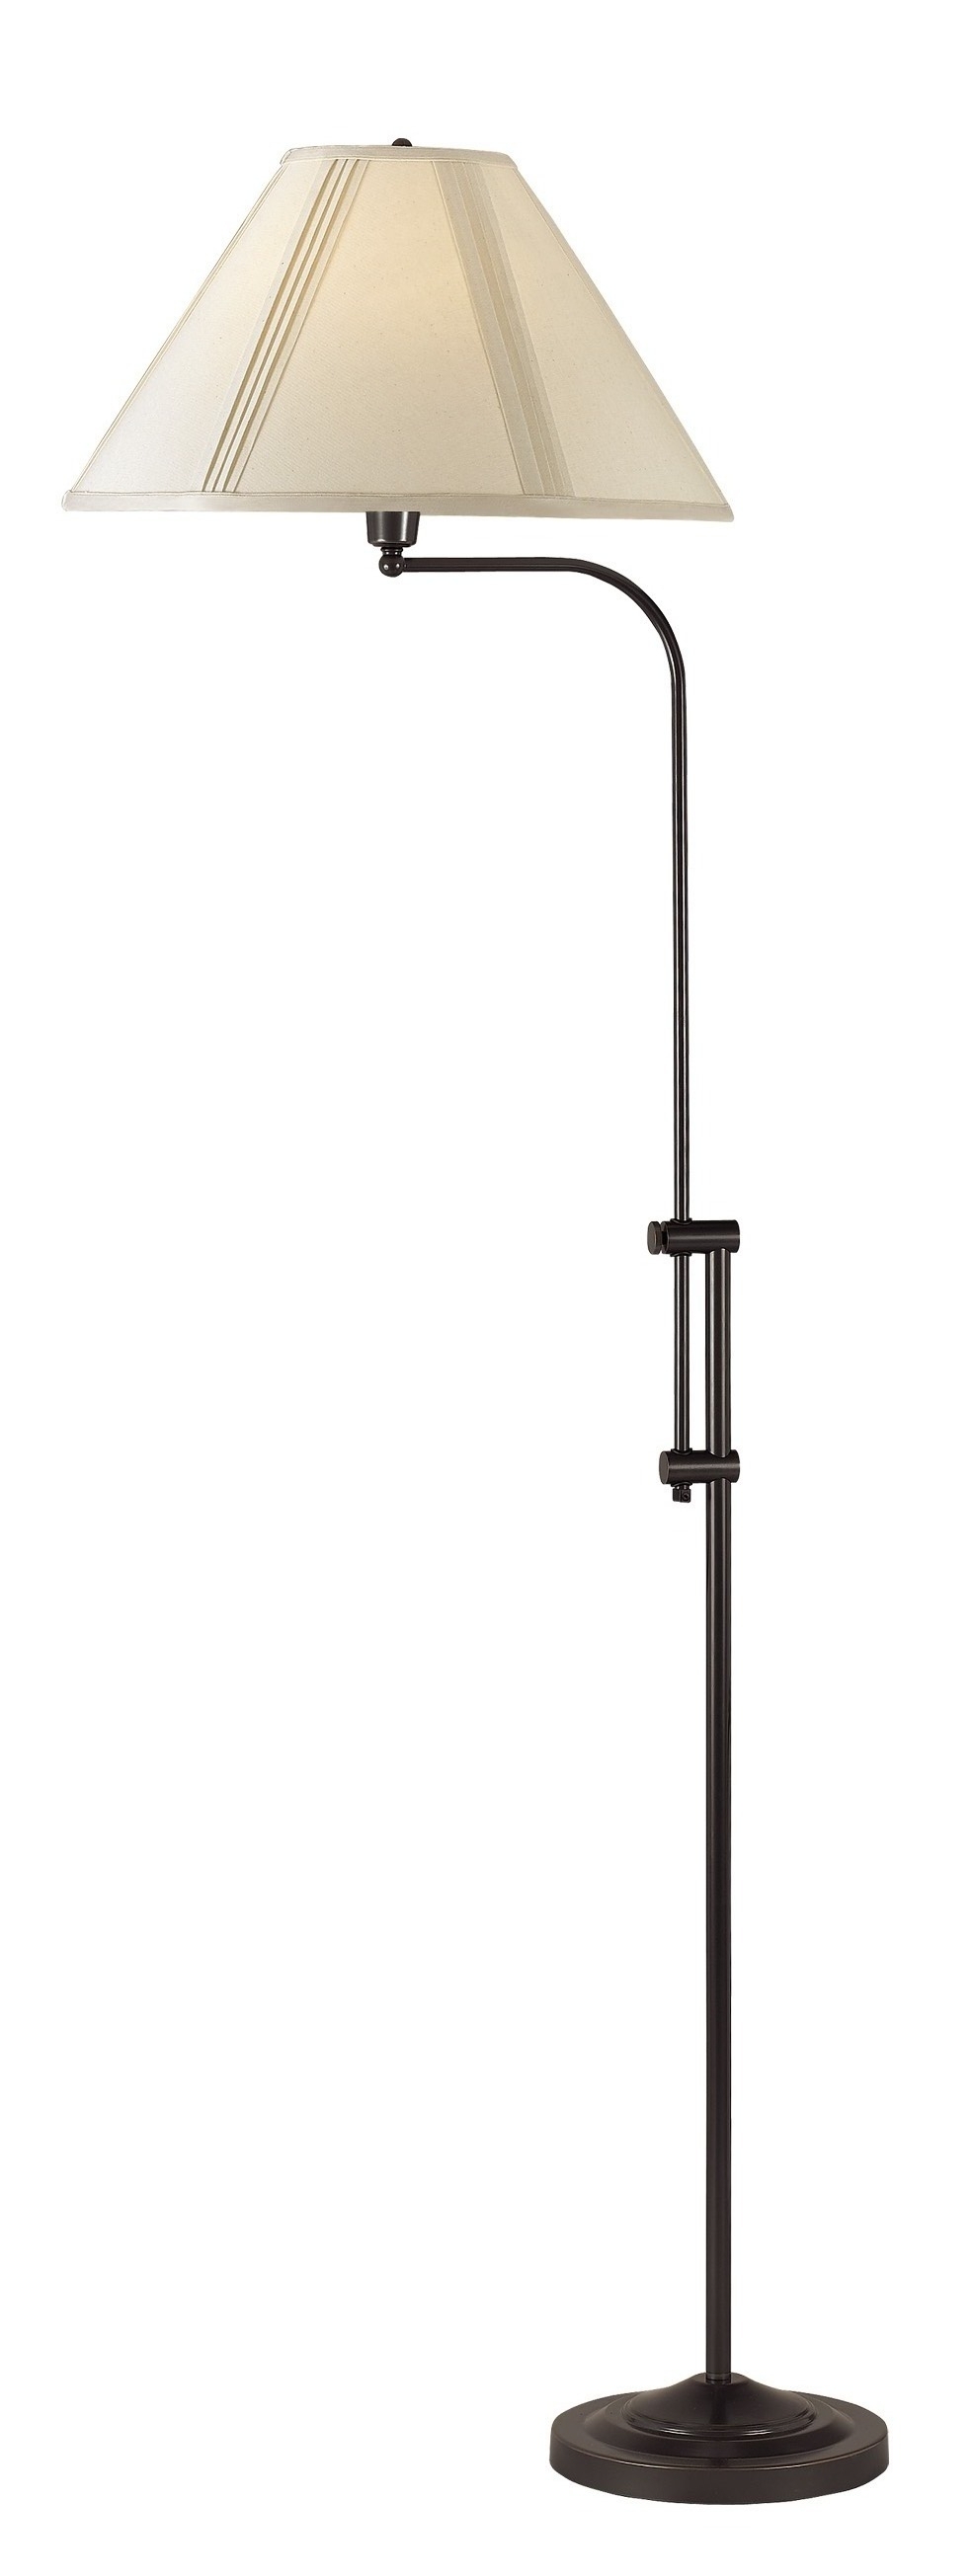 150W 3 Way Floor Lamp With Adjustable Height